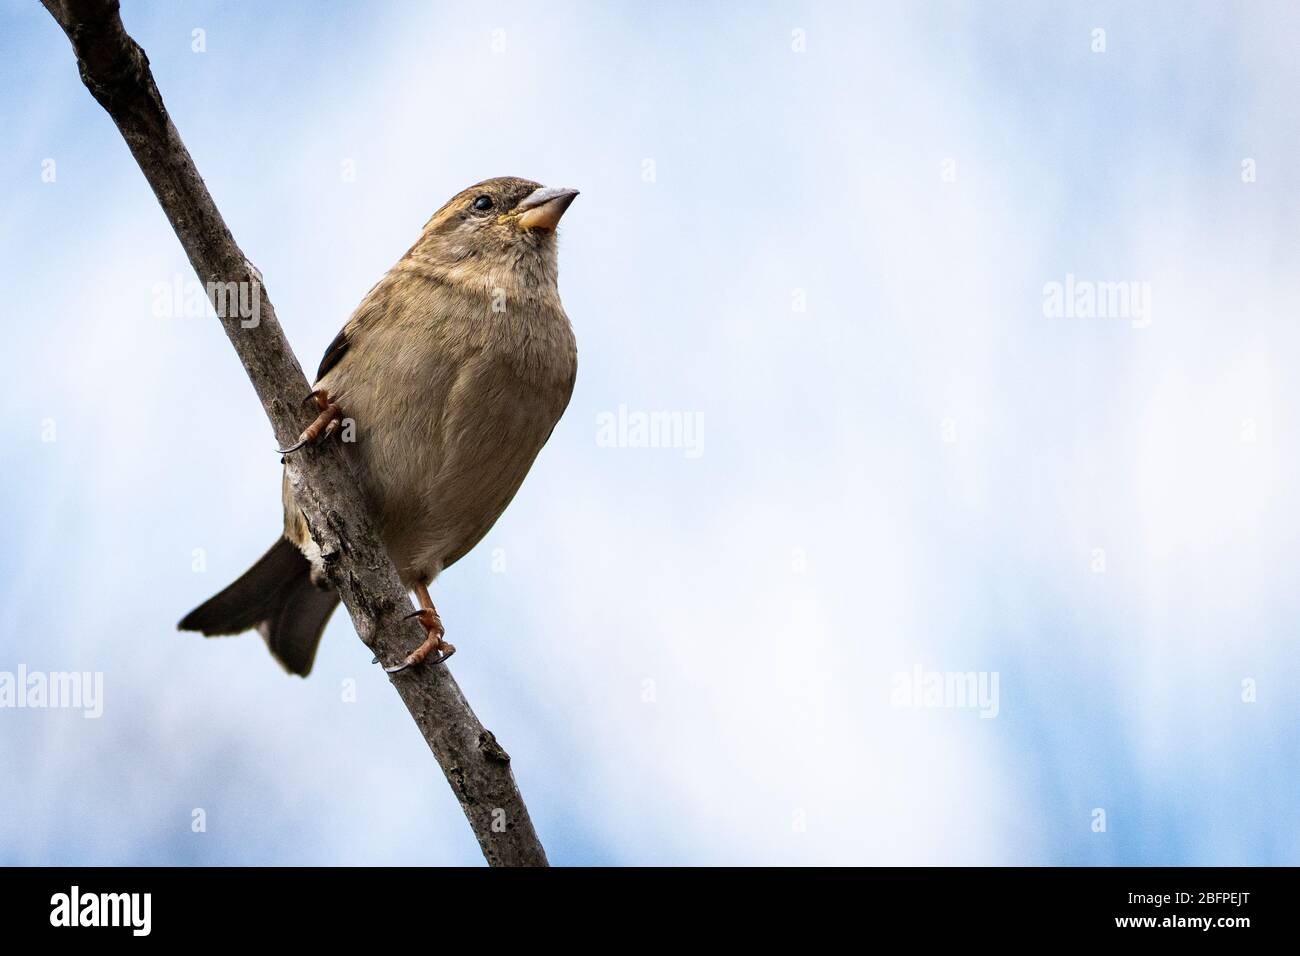 A house sparrow perched near a bird feeder in a backyard Stock Photo